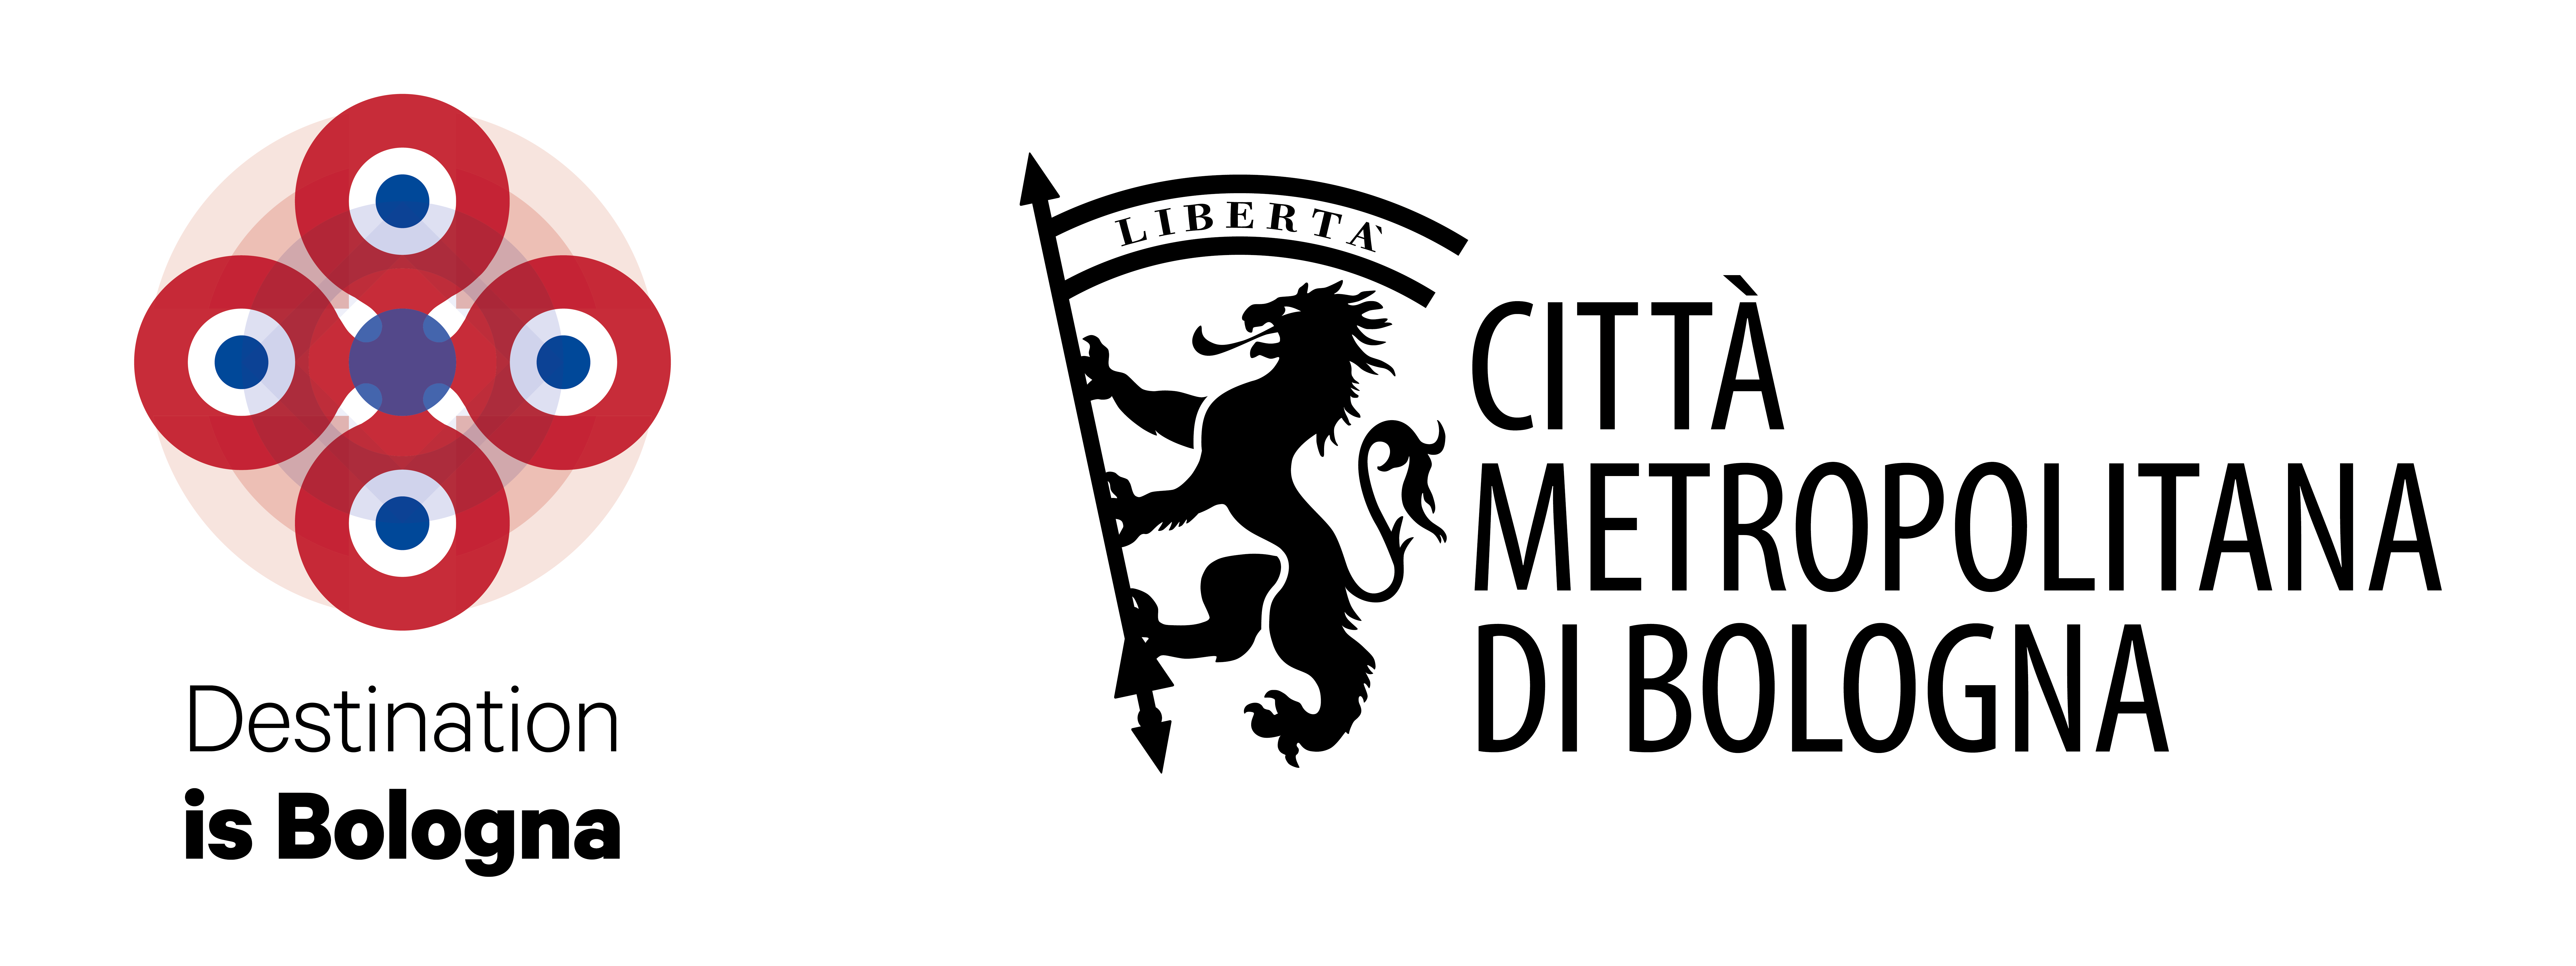 Logo Destinazione turistica Bologna metropolitana